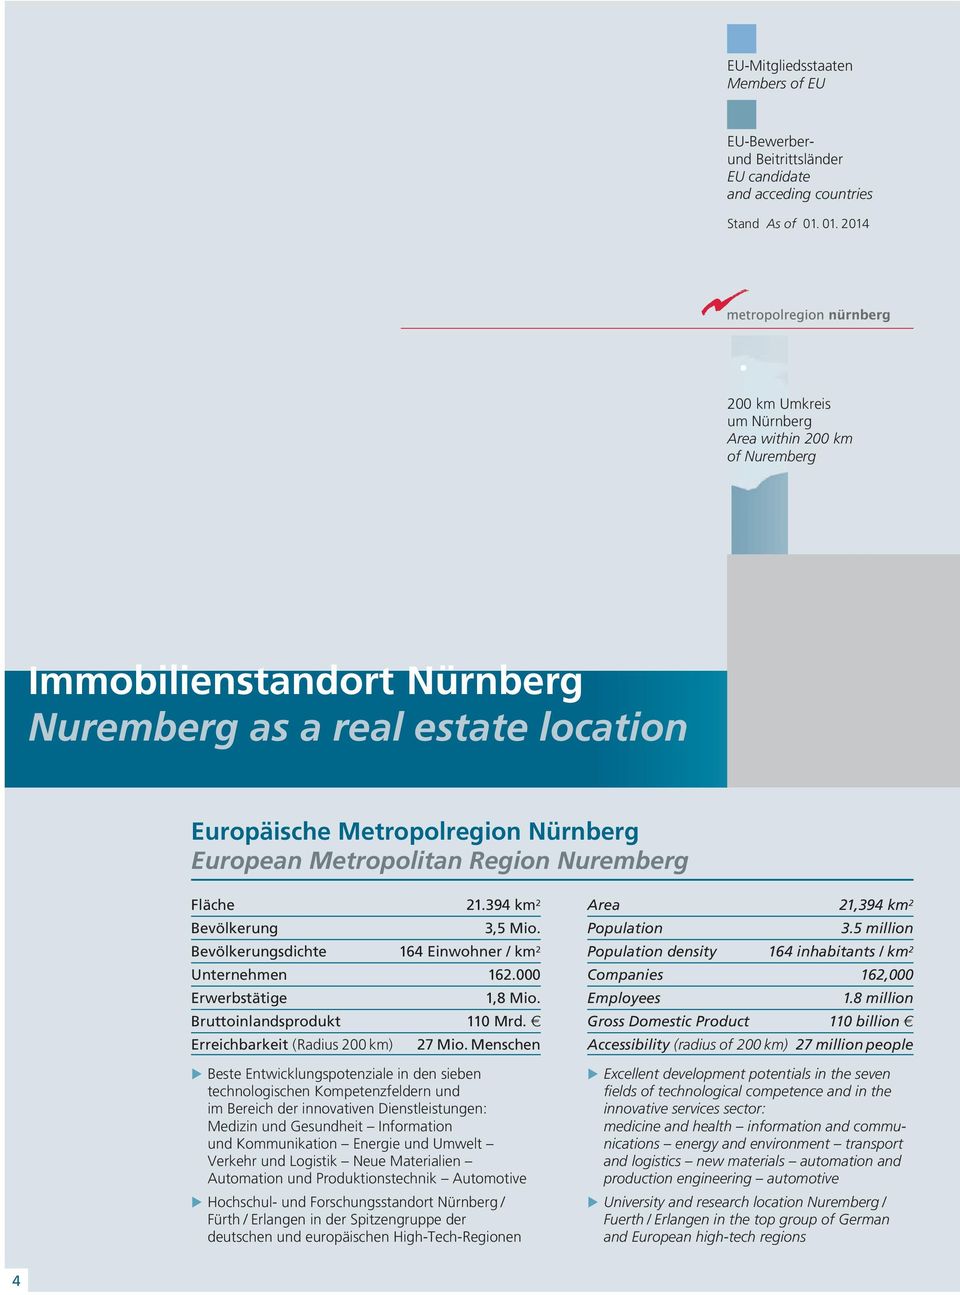 Nuremberg Fläche 1. km Bevölkerung, Mio. Bevölkerungsdichte 16 Einwohner / km Unternehmen 16.000 Erwerbstätige 1, Mio. Bruttoinlandsprodukt 110 Mrd. Erreichbarkeit (Radius 00 km) 7 Mio.